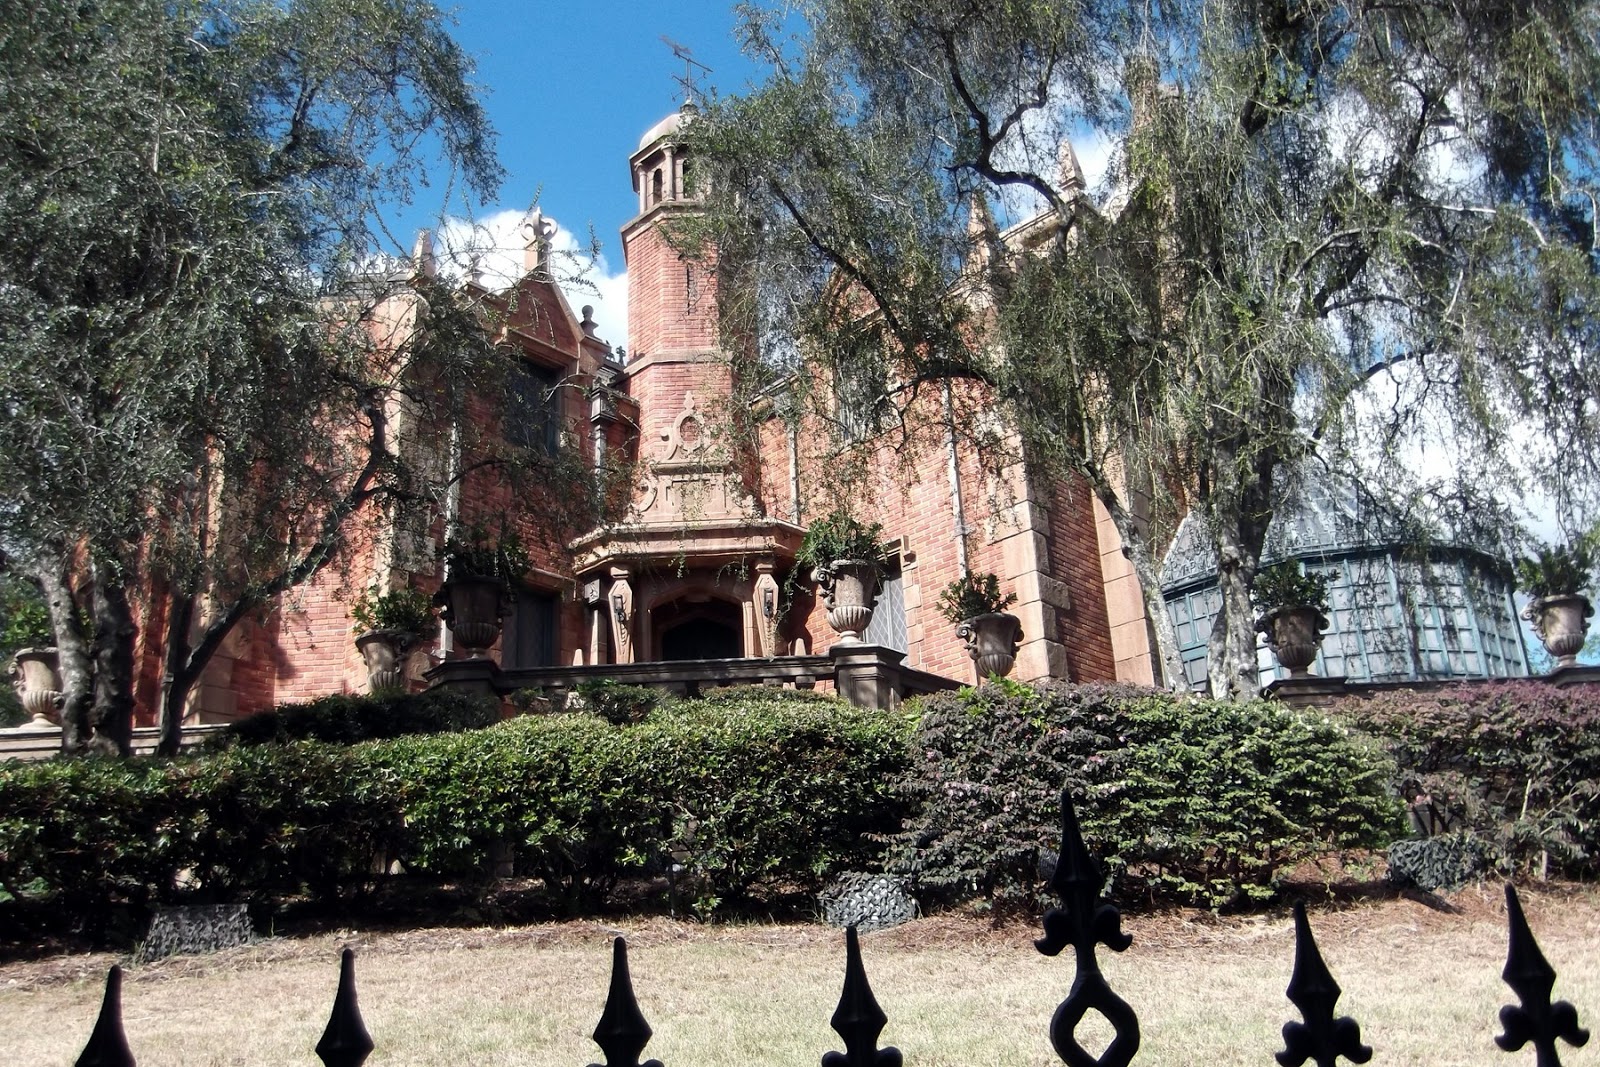 Disney at Heart: The Haunted Mansion at the Magic Kingdom